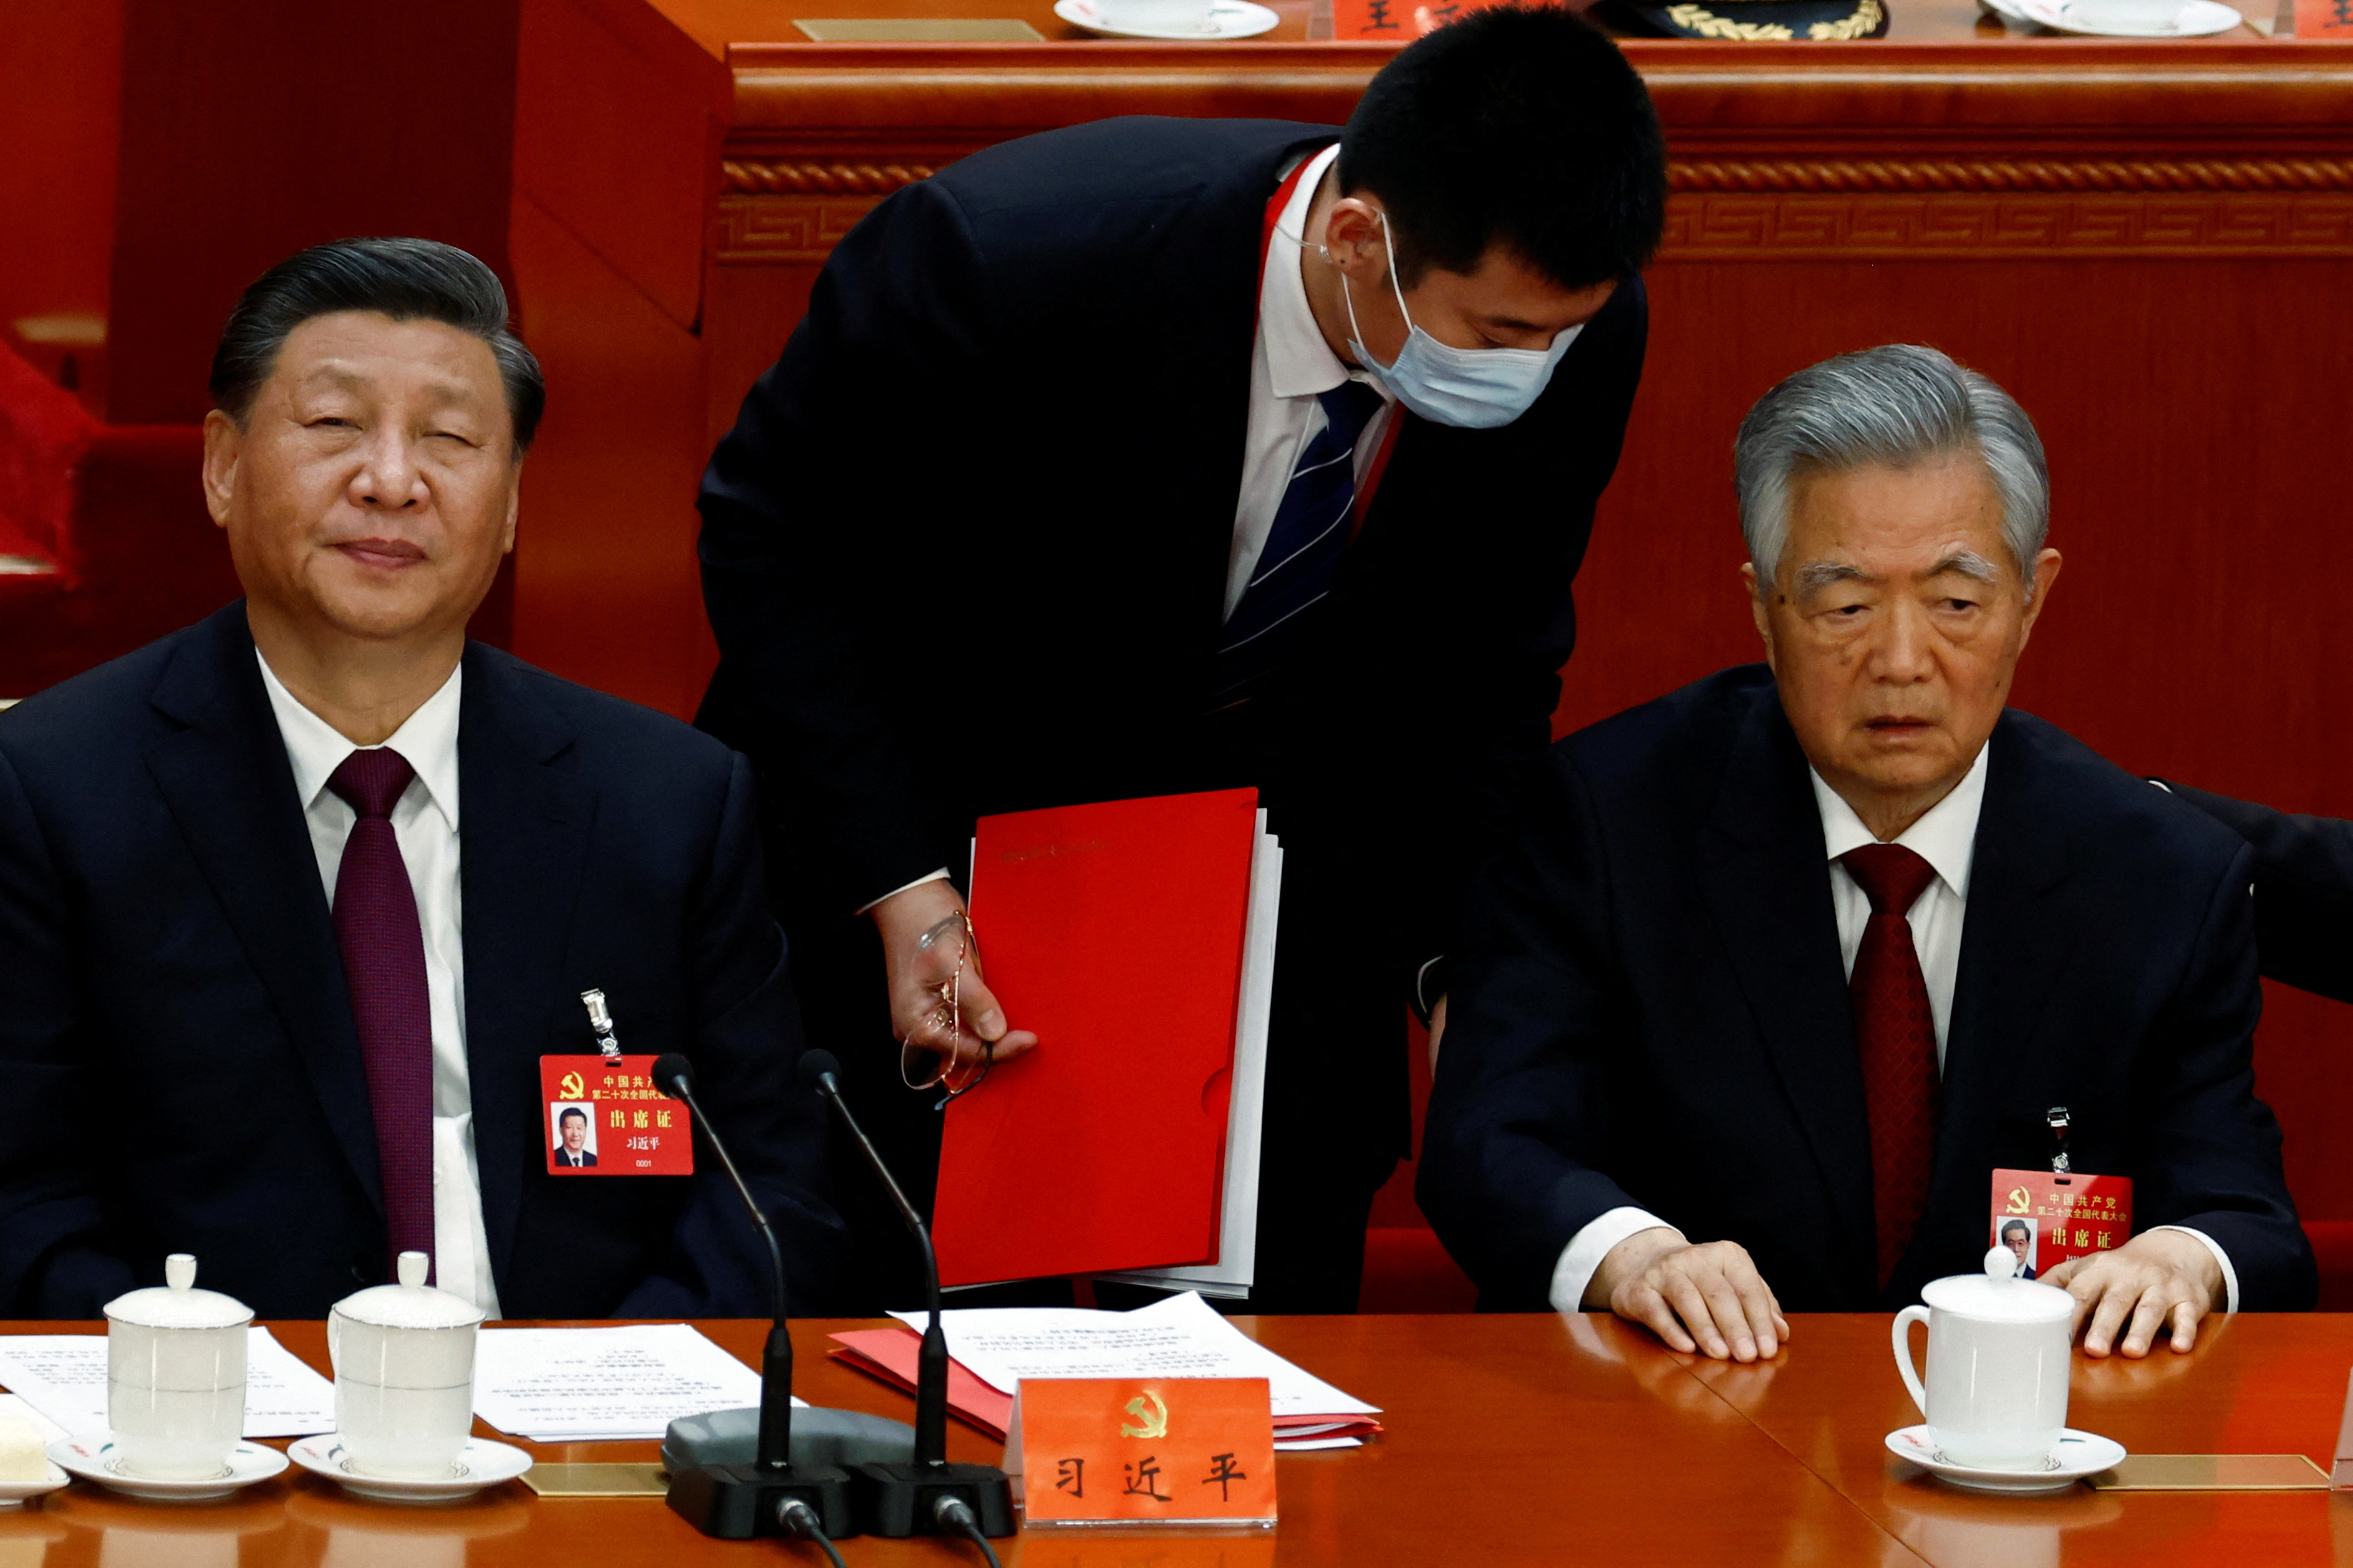 El jefe del régimen chino Xi Jinping y su predecesor Hu Jintao asisten a la ceremonia de clausura del 20º Congreso Nacional del Partido Comunista de China, en el Gran Salón del Pueblo en Beijing